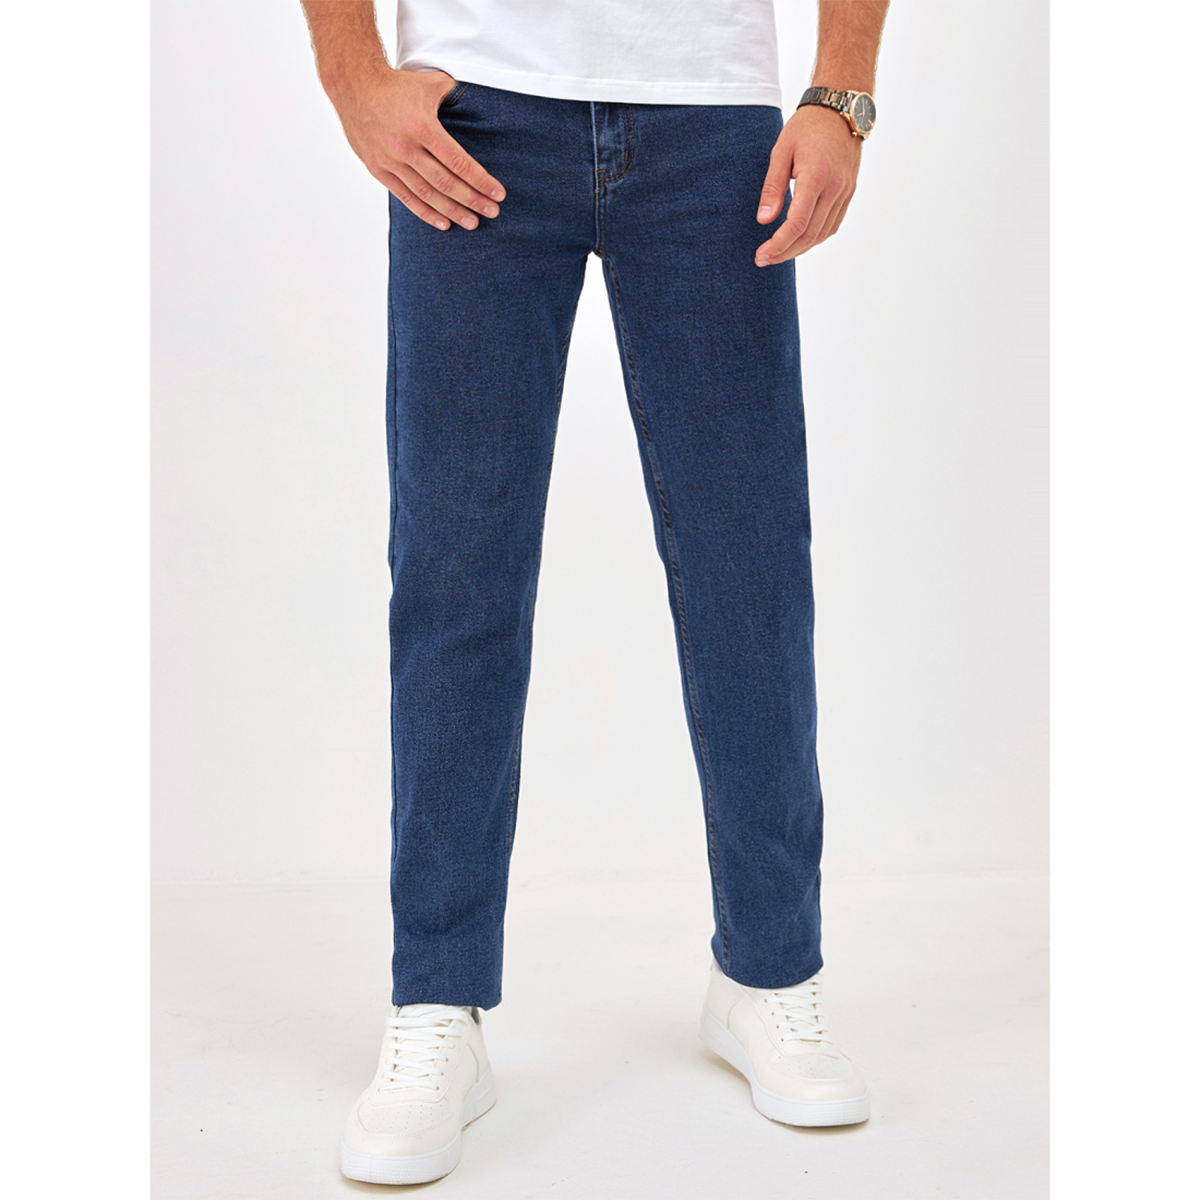 Джинсы мужские Barouz Jeans classic синие 32